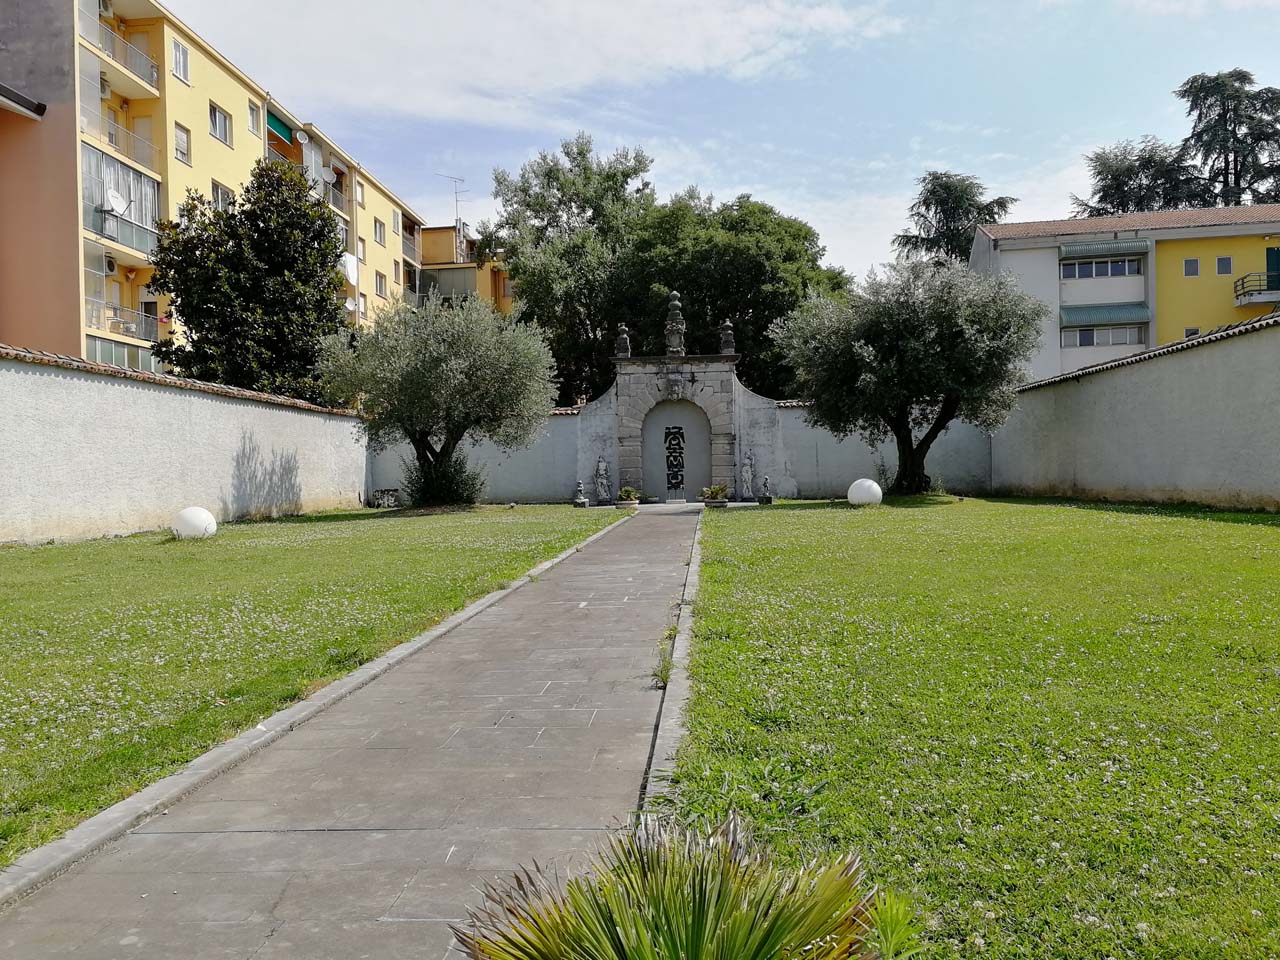 Cortile e giardino retrostanti Palazzo Cassini, Camucio (giardino) - Udine (UD)  (XVI)